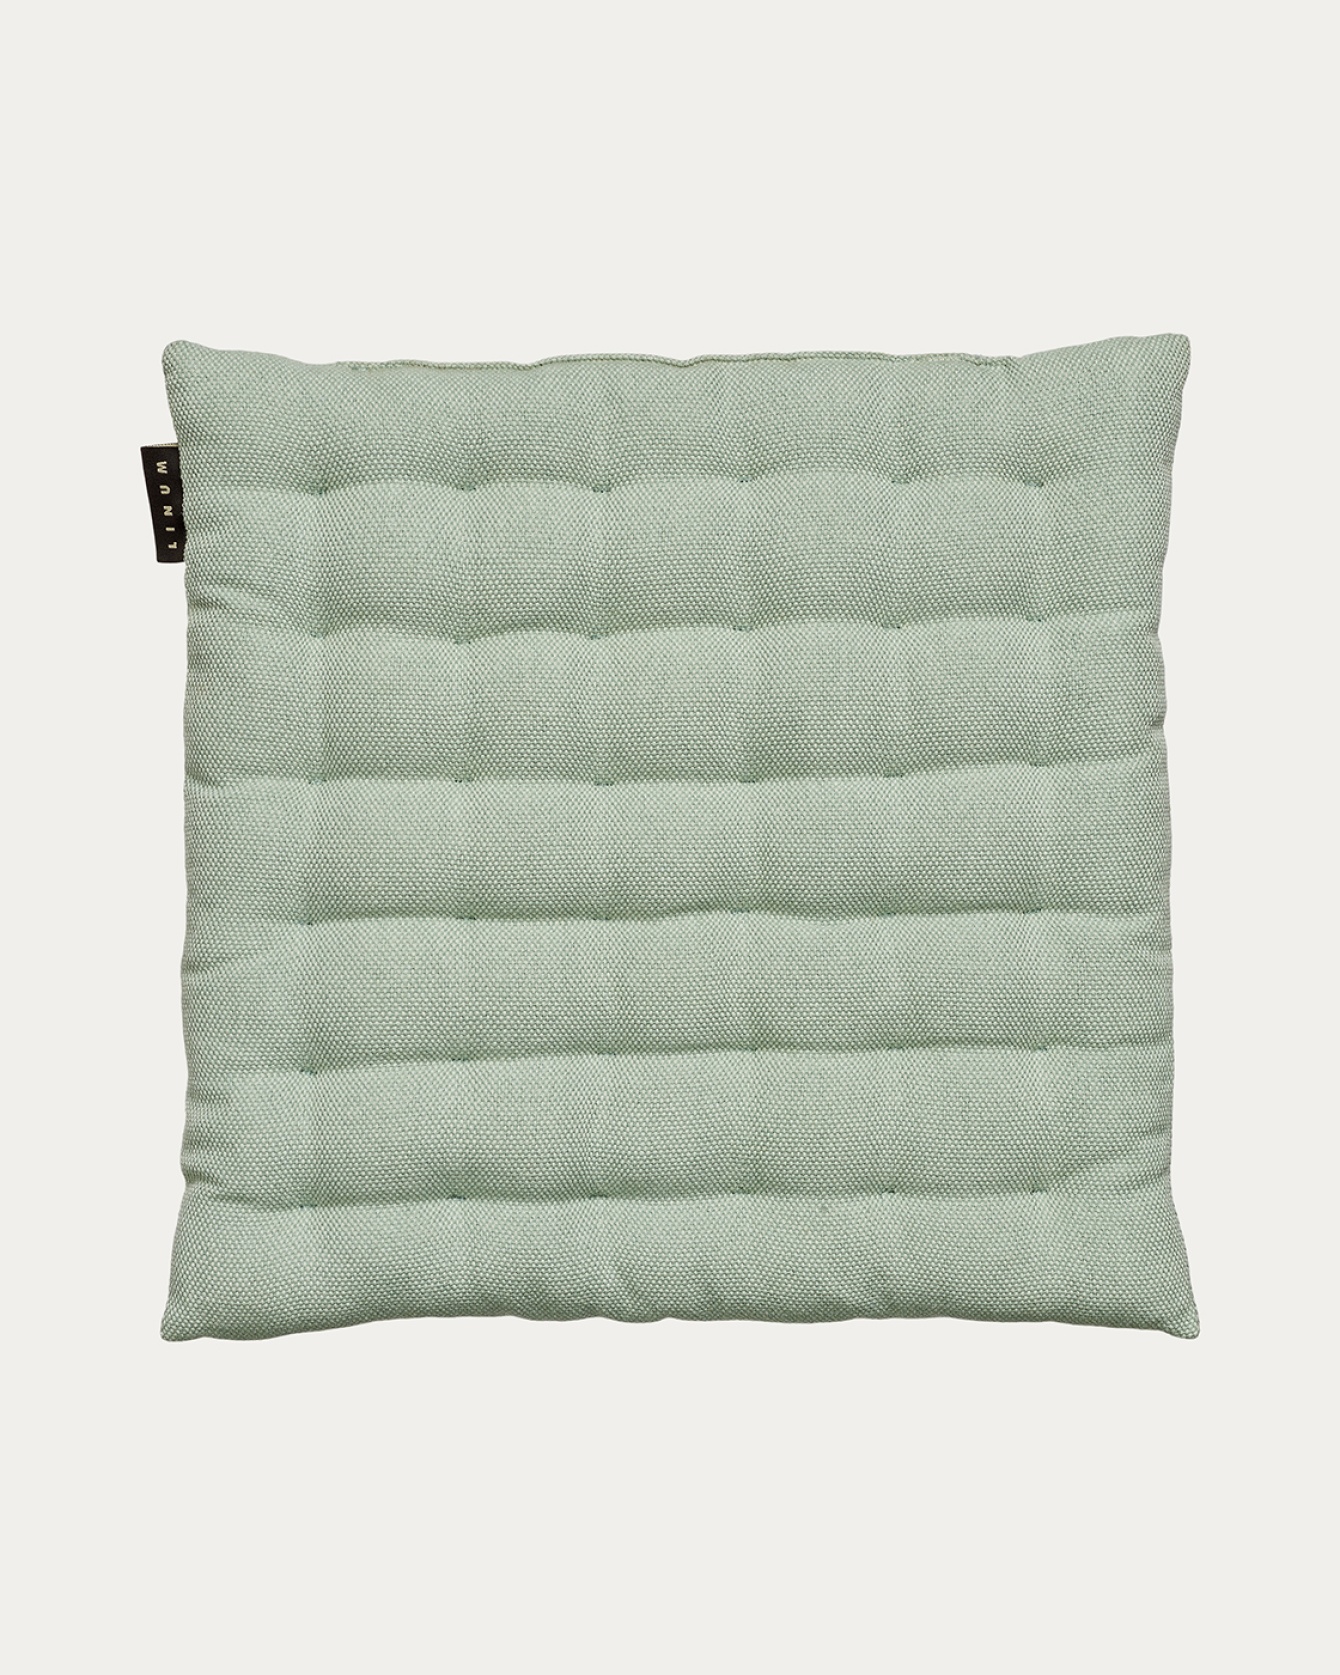 Produktbild helles eisgrün PEPPER Sitzkissen aus weicher Baumwolle mit Füllung aus recyceltem Polyester von LINUM DESIGN. Größe 40x40 cm.